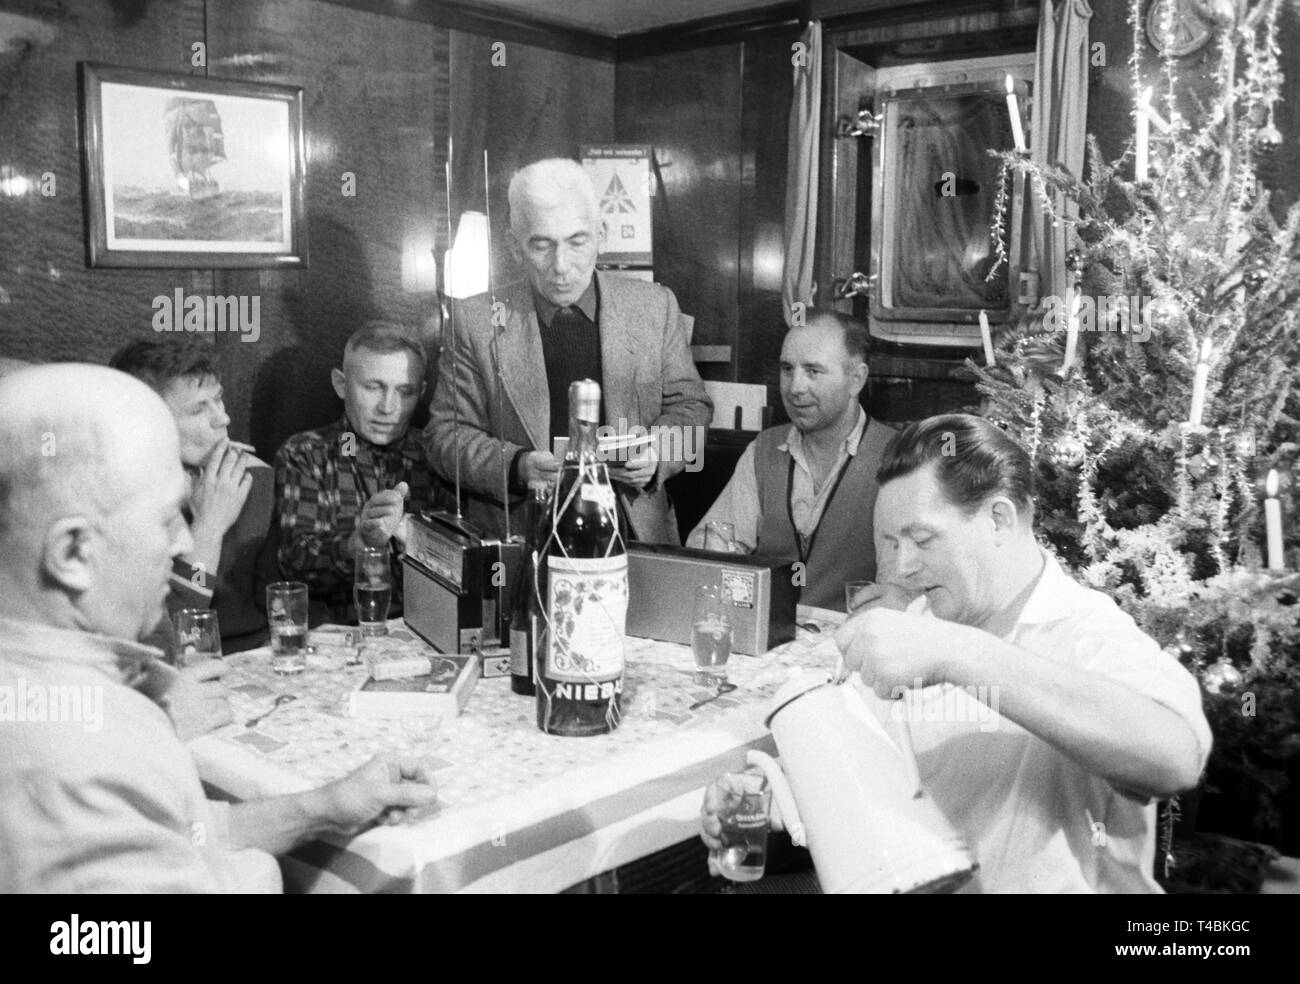 Die Crew der älteste deutsche Feuerschiff "Bremen" sitzt zusammen am 16. Dezember 1963 während eines Weihnachtsessen in das Captain's Zimmer. Kapitän Grelle (Mitte) hält eine Rede während Jürgens, der Koch (rechts), die Christmas punch gießt. | Verwendung weltweit Stockfoto